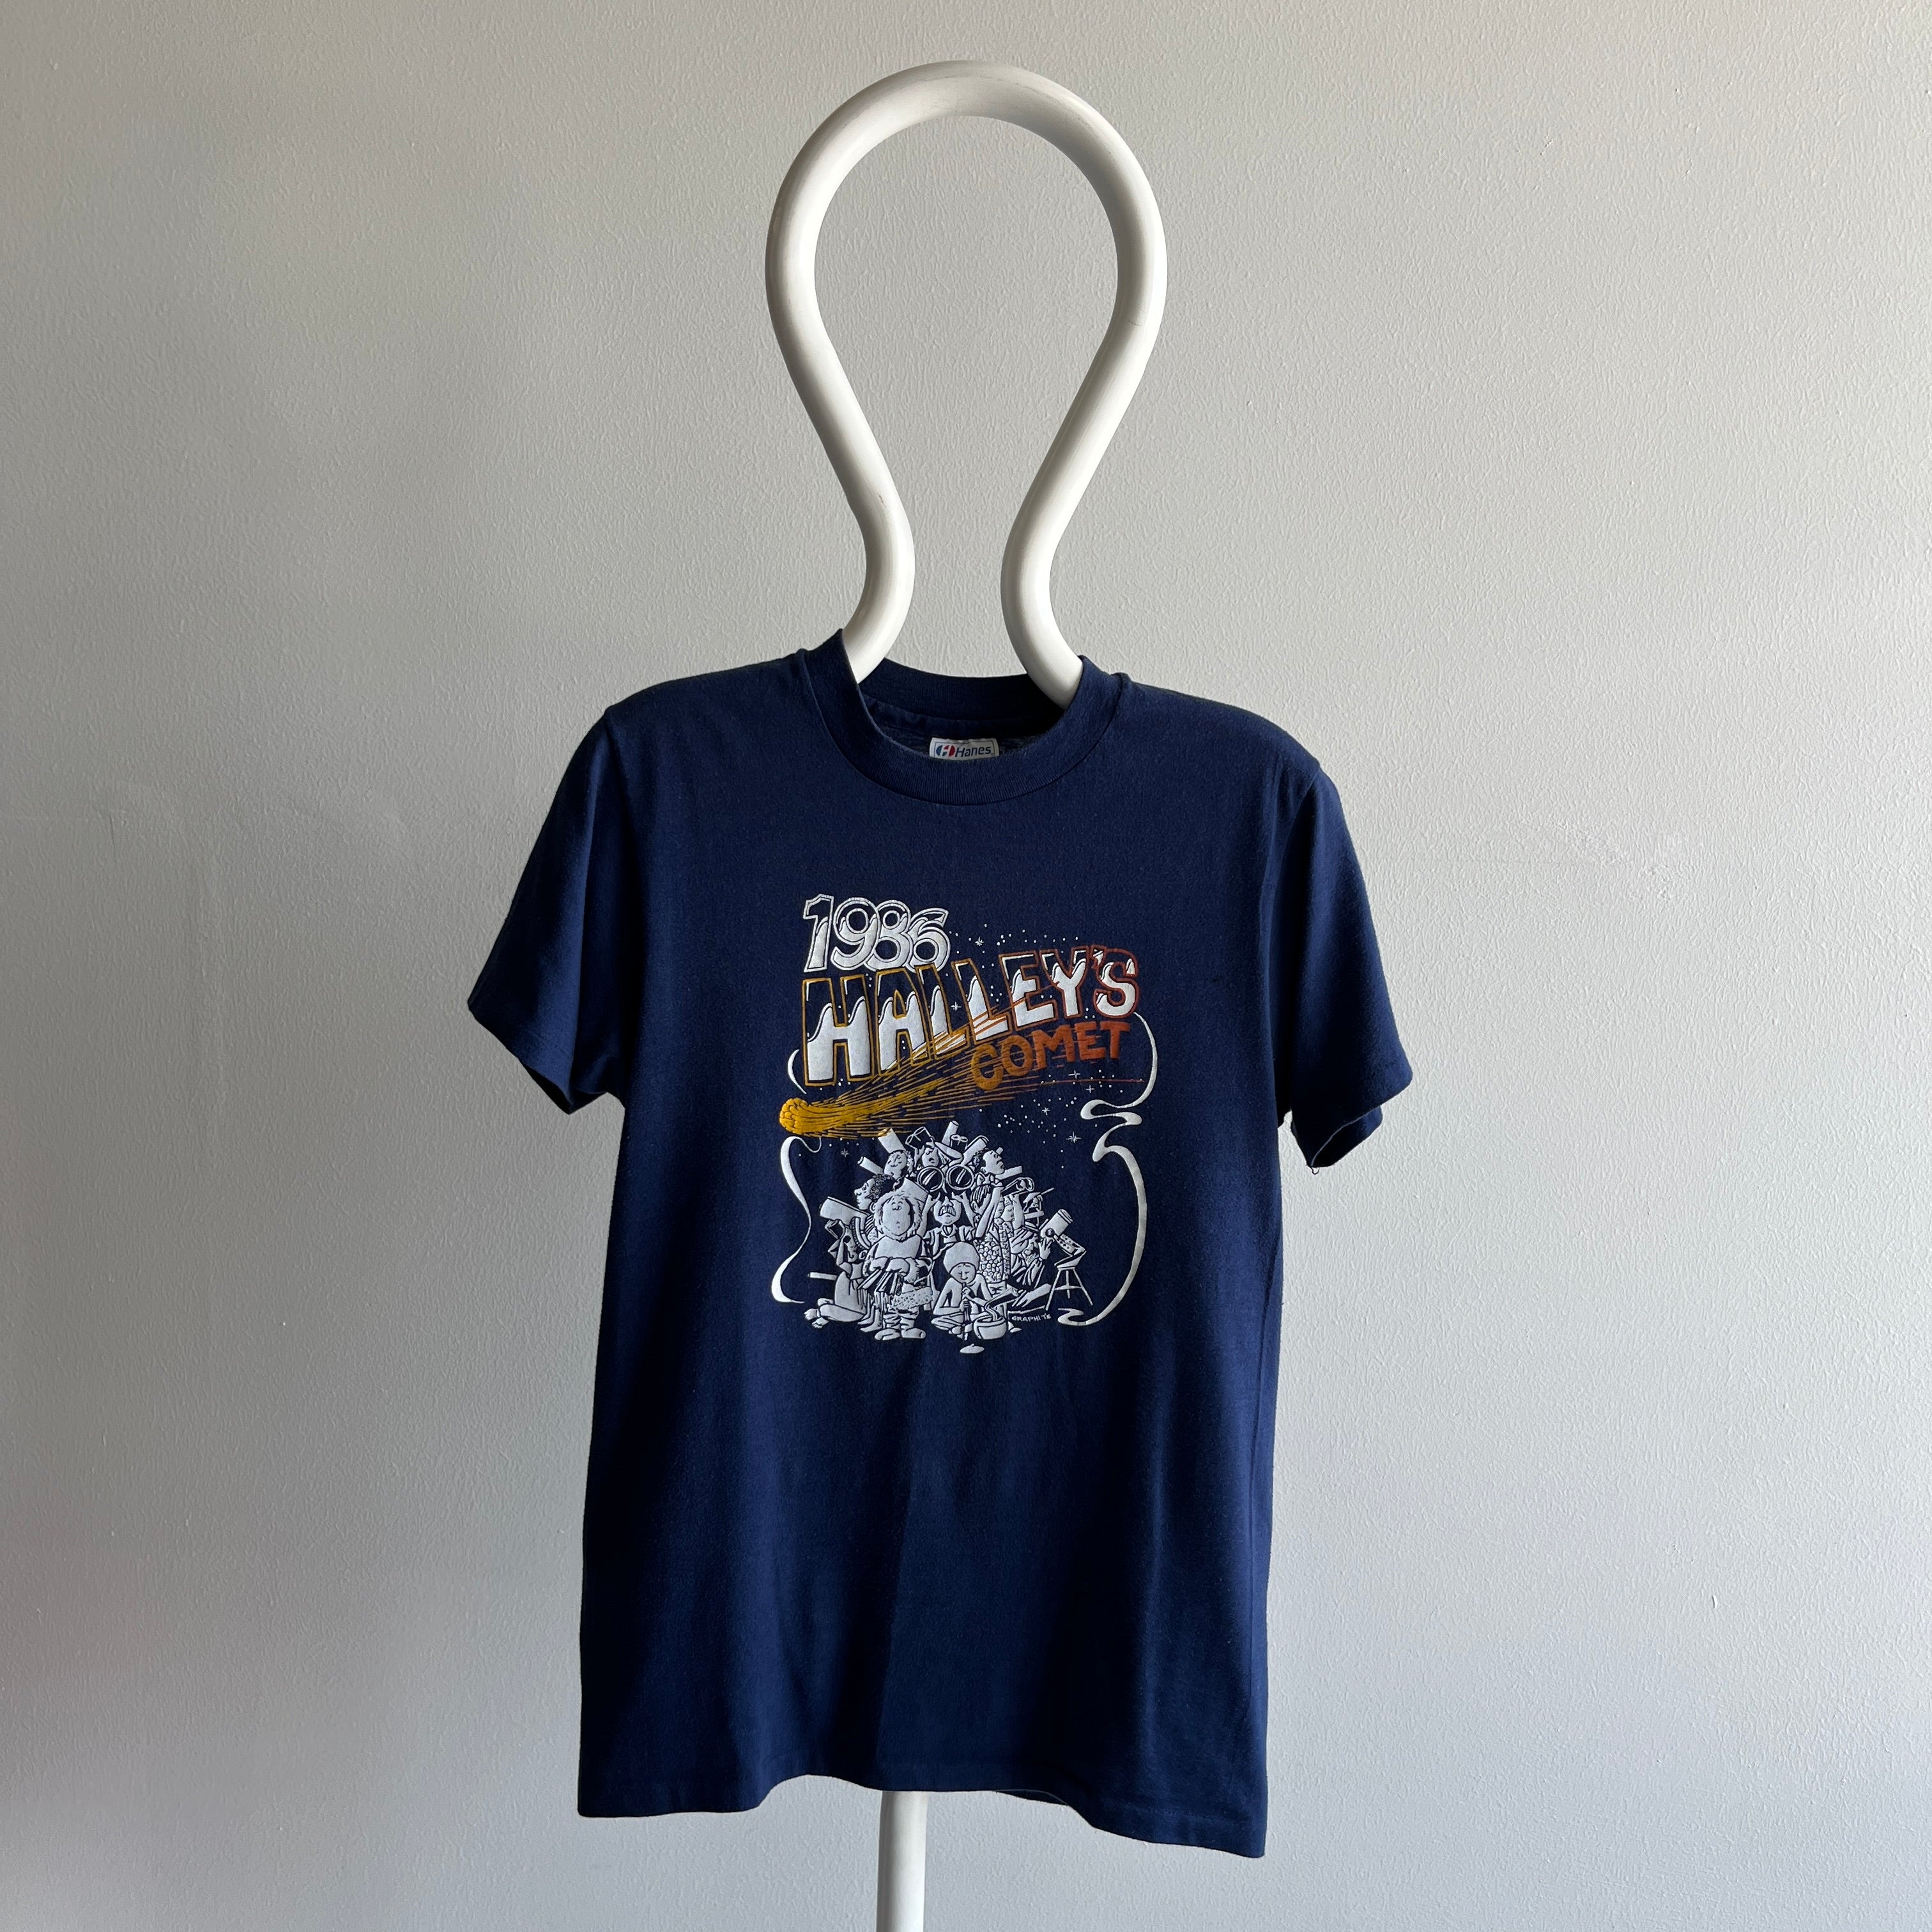 1986 Halley's Comet Super Great T-Shirt